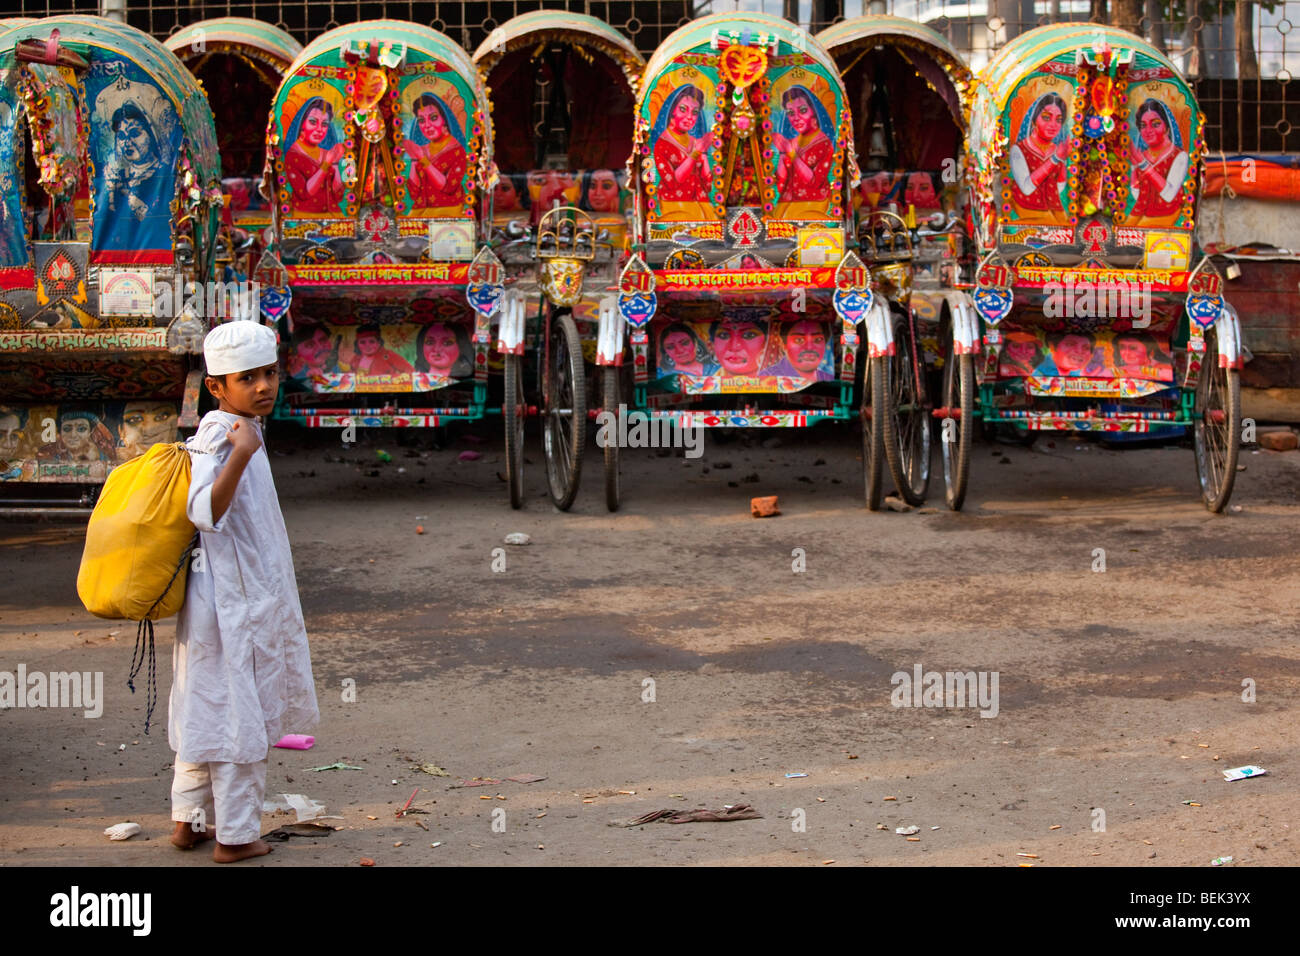 Muslim Boy and Rickshaws in Dhaka Bangladesh Stock Photo